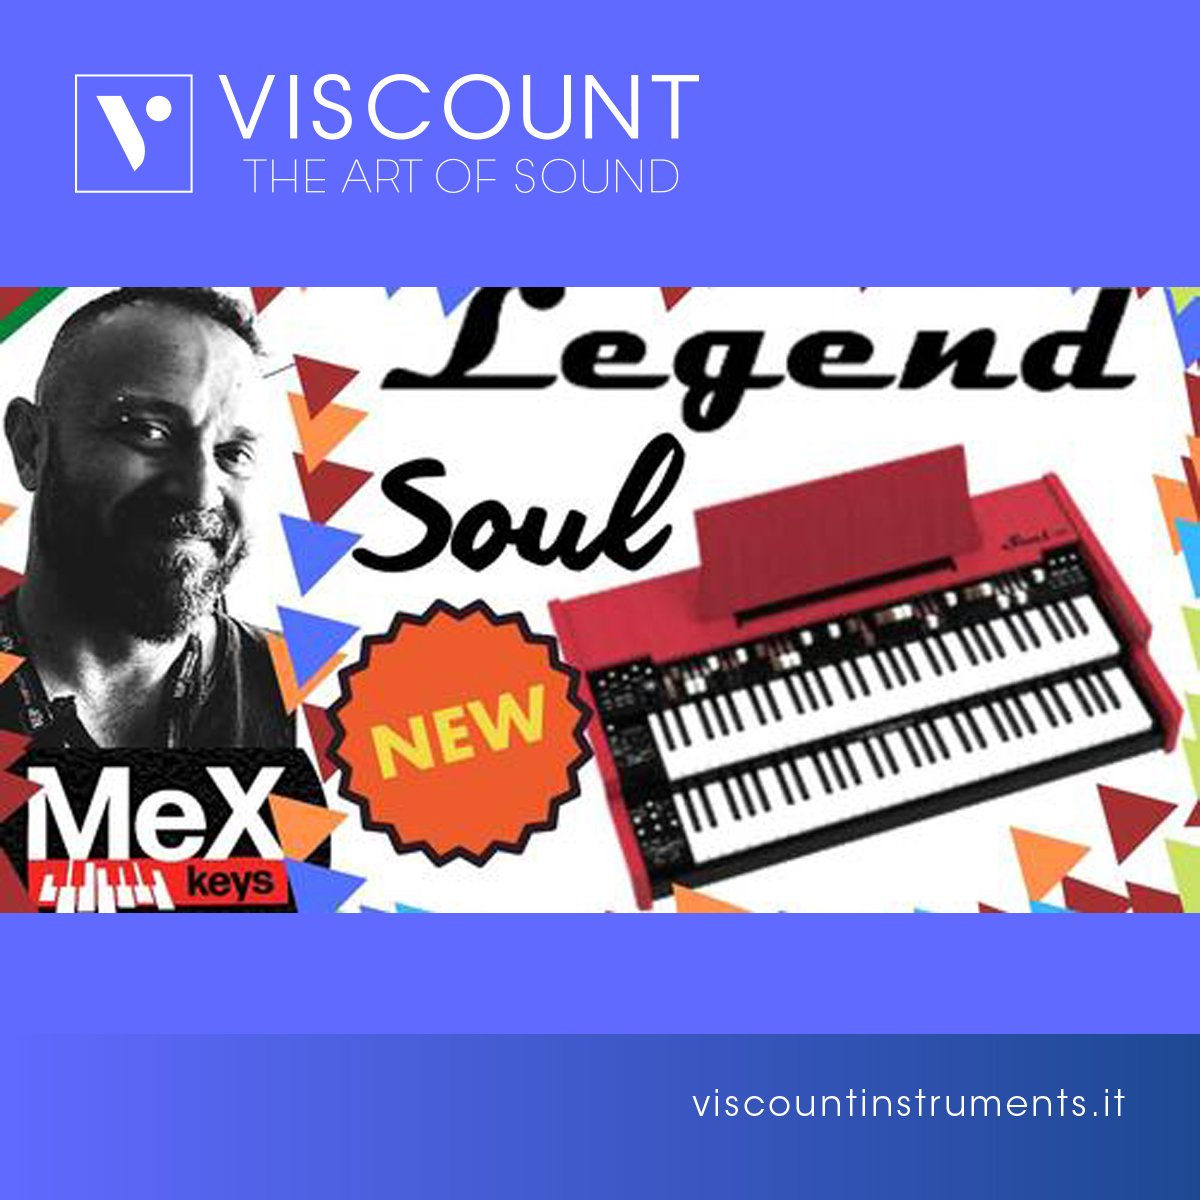 Viscount Legend Soul 261 review by MeX